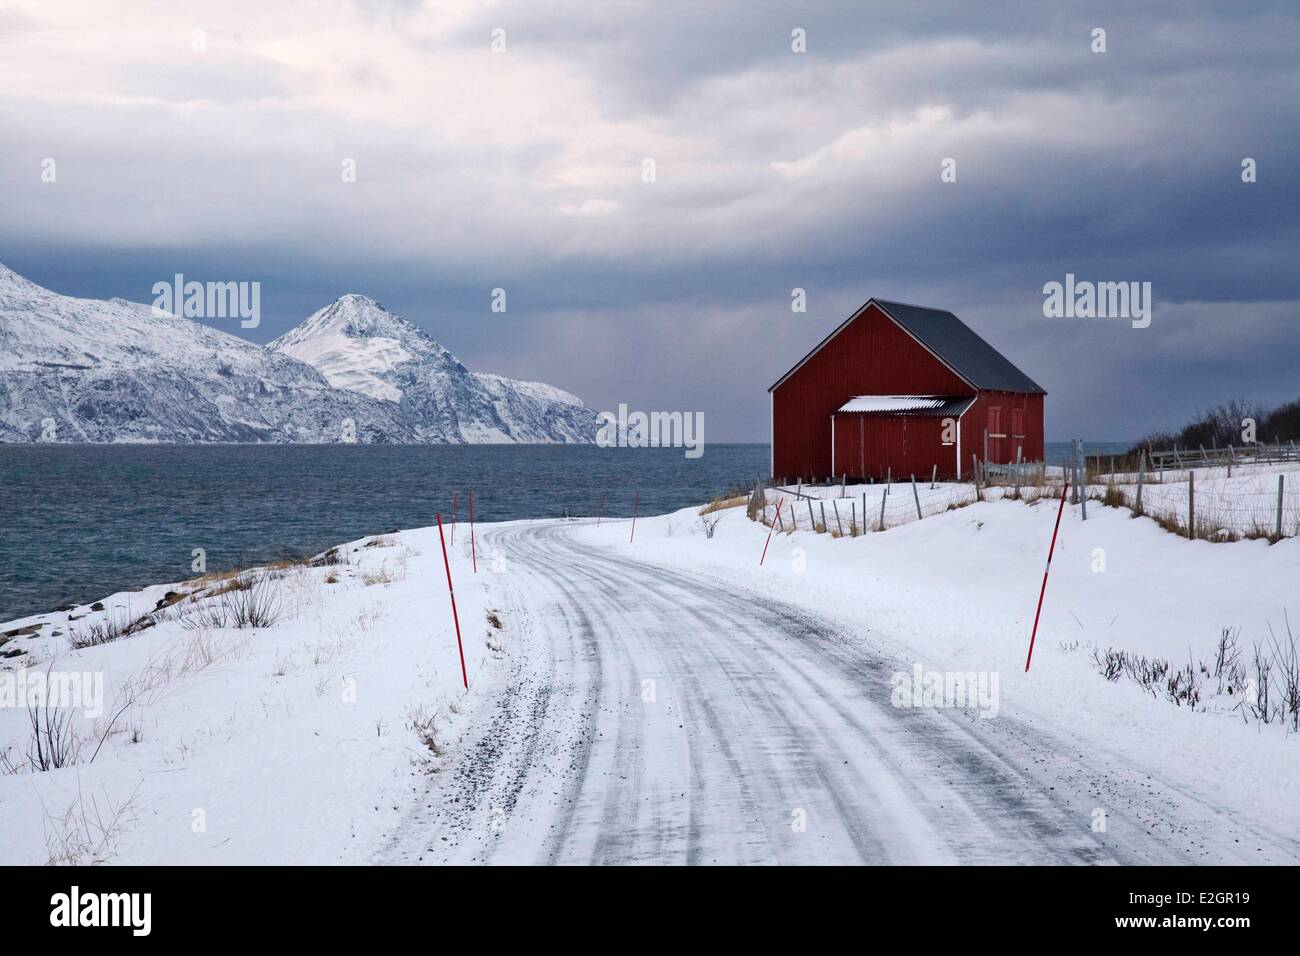 Norway Troms rorbuer fishing house in Uloya island Lyngen Alps Stock Photo